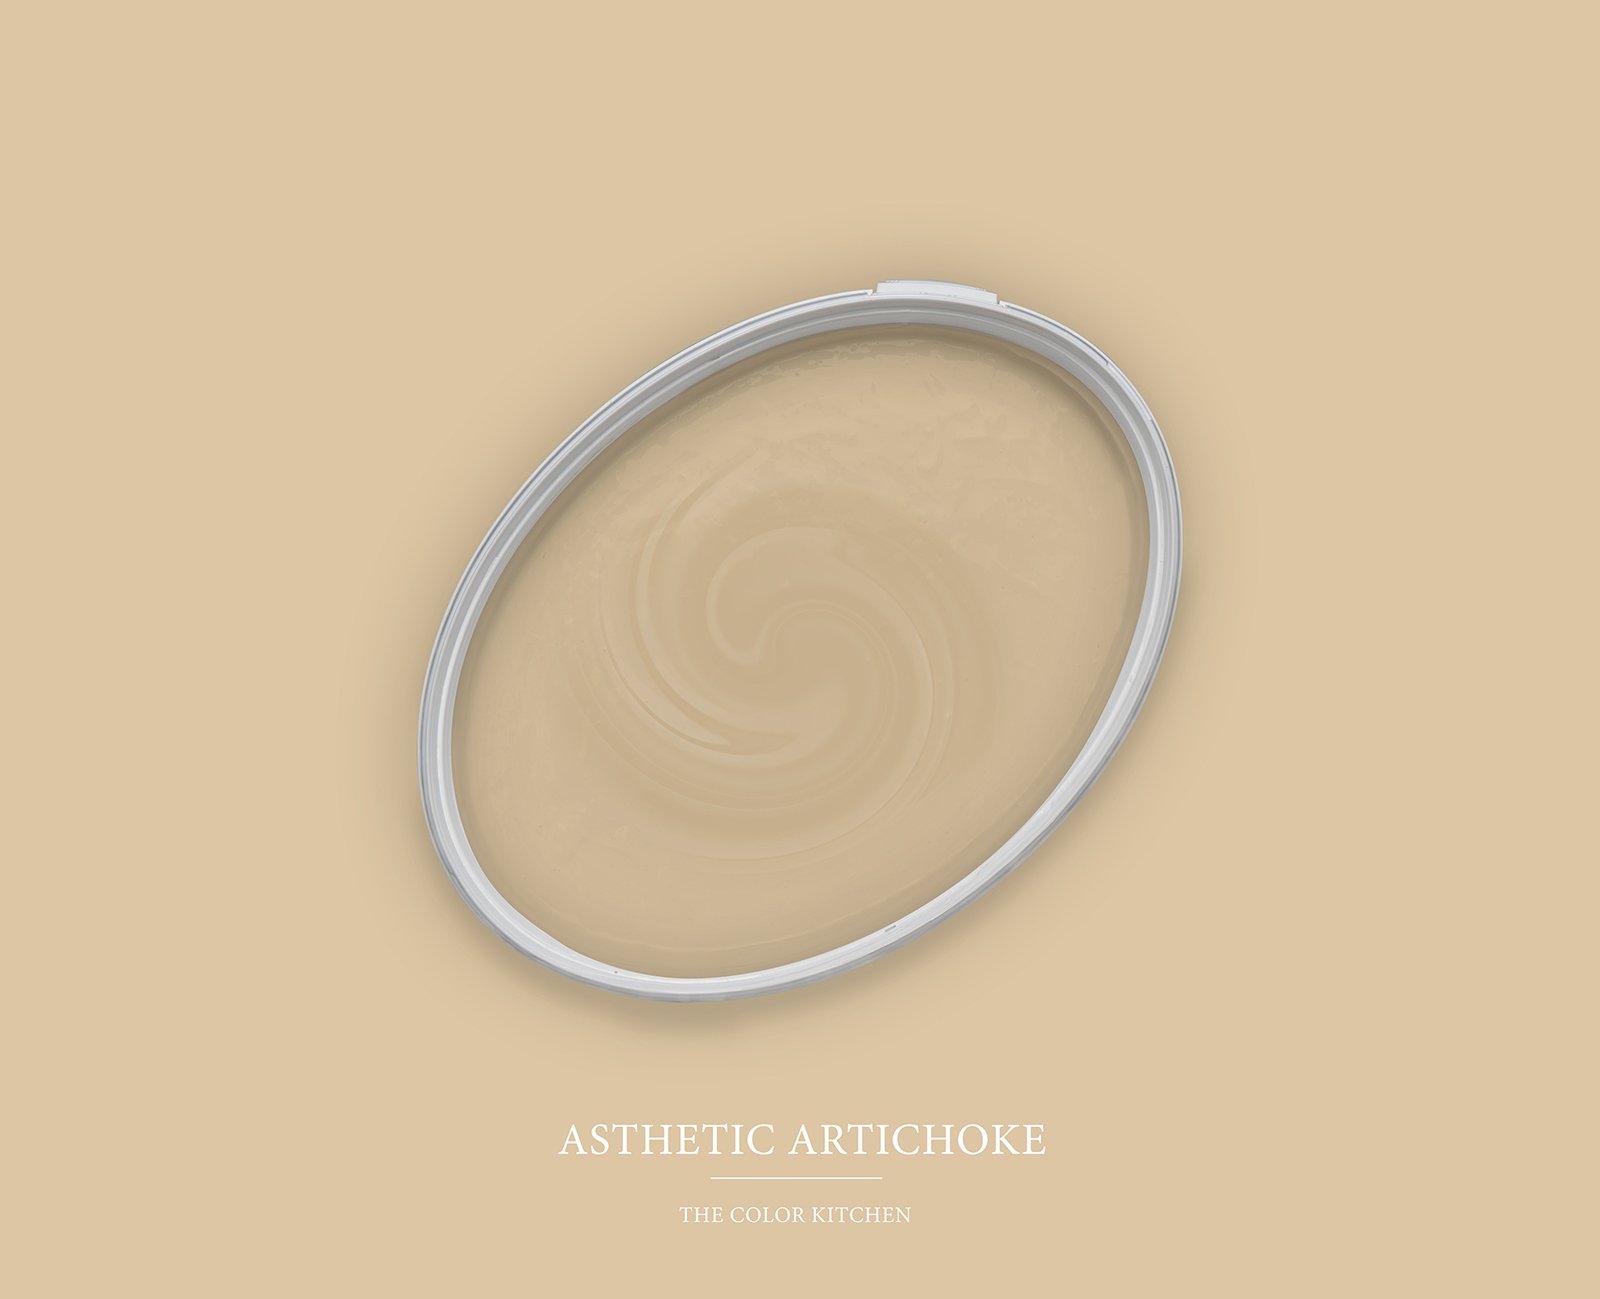         Wall Paint TCK6003 »Asthetic Artichoke« in homely beige – 2.5 litre
    